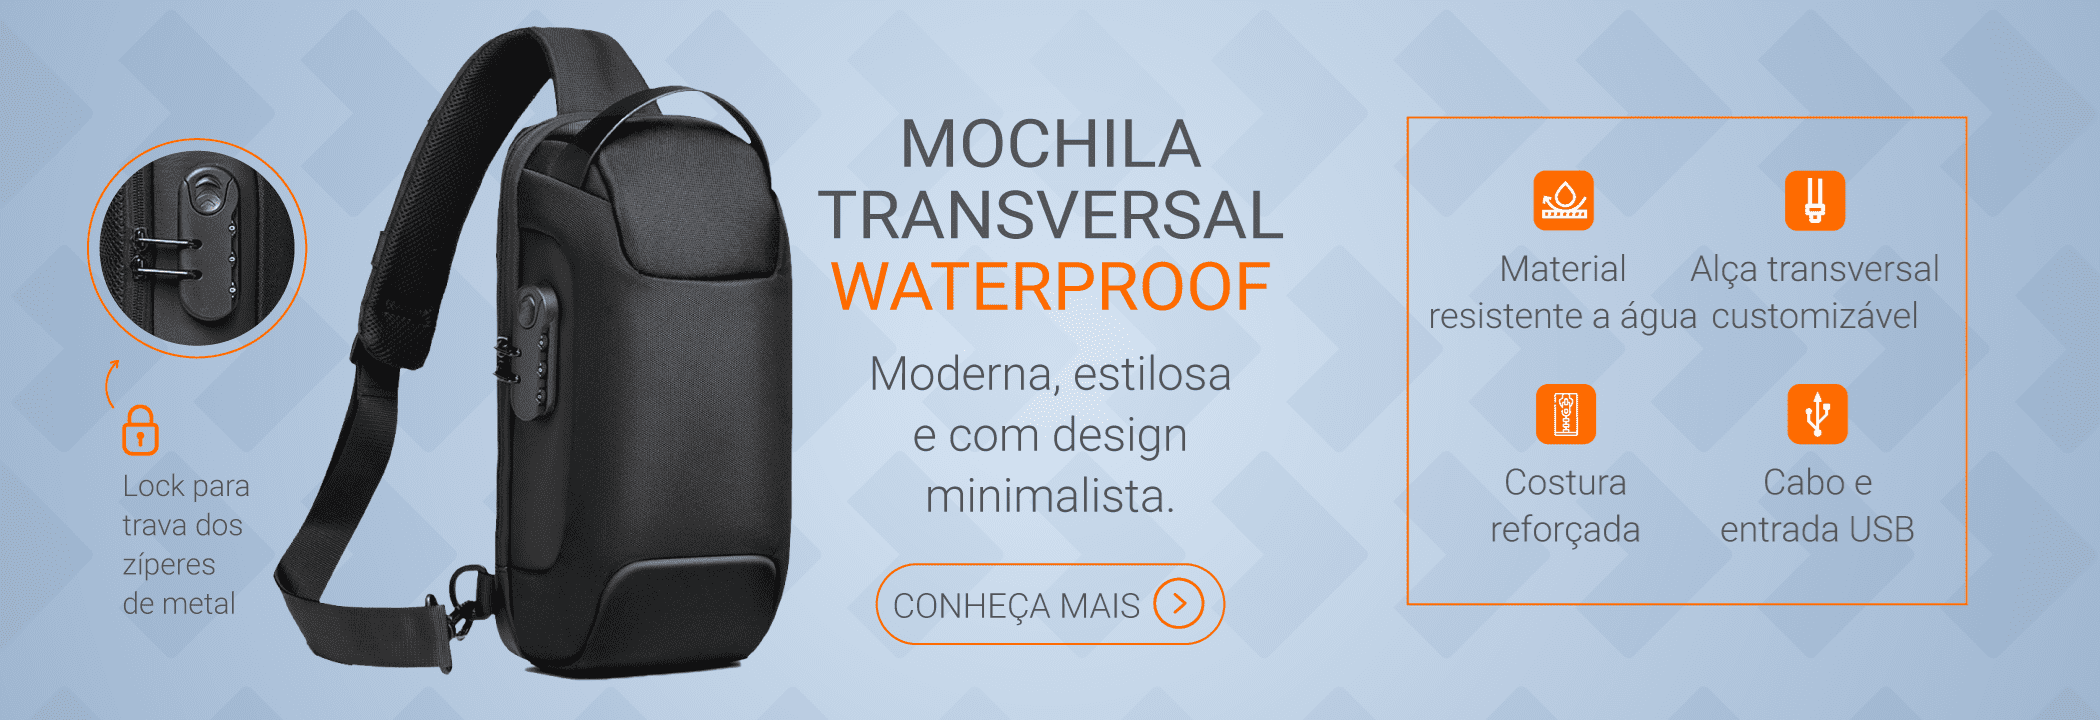 Mochilas waterproof